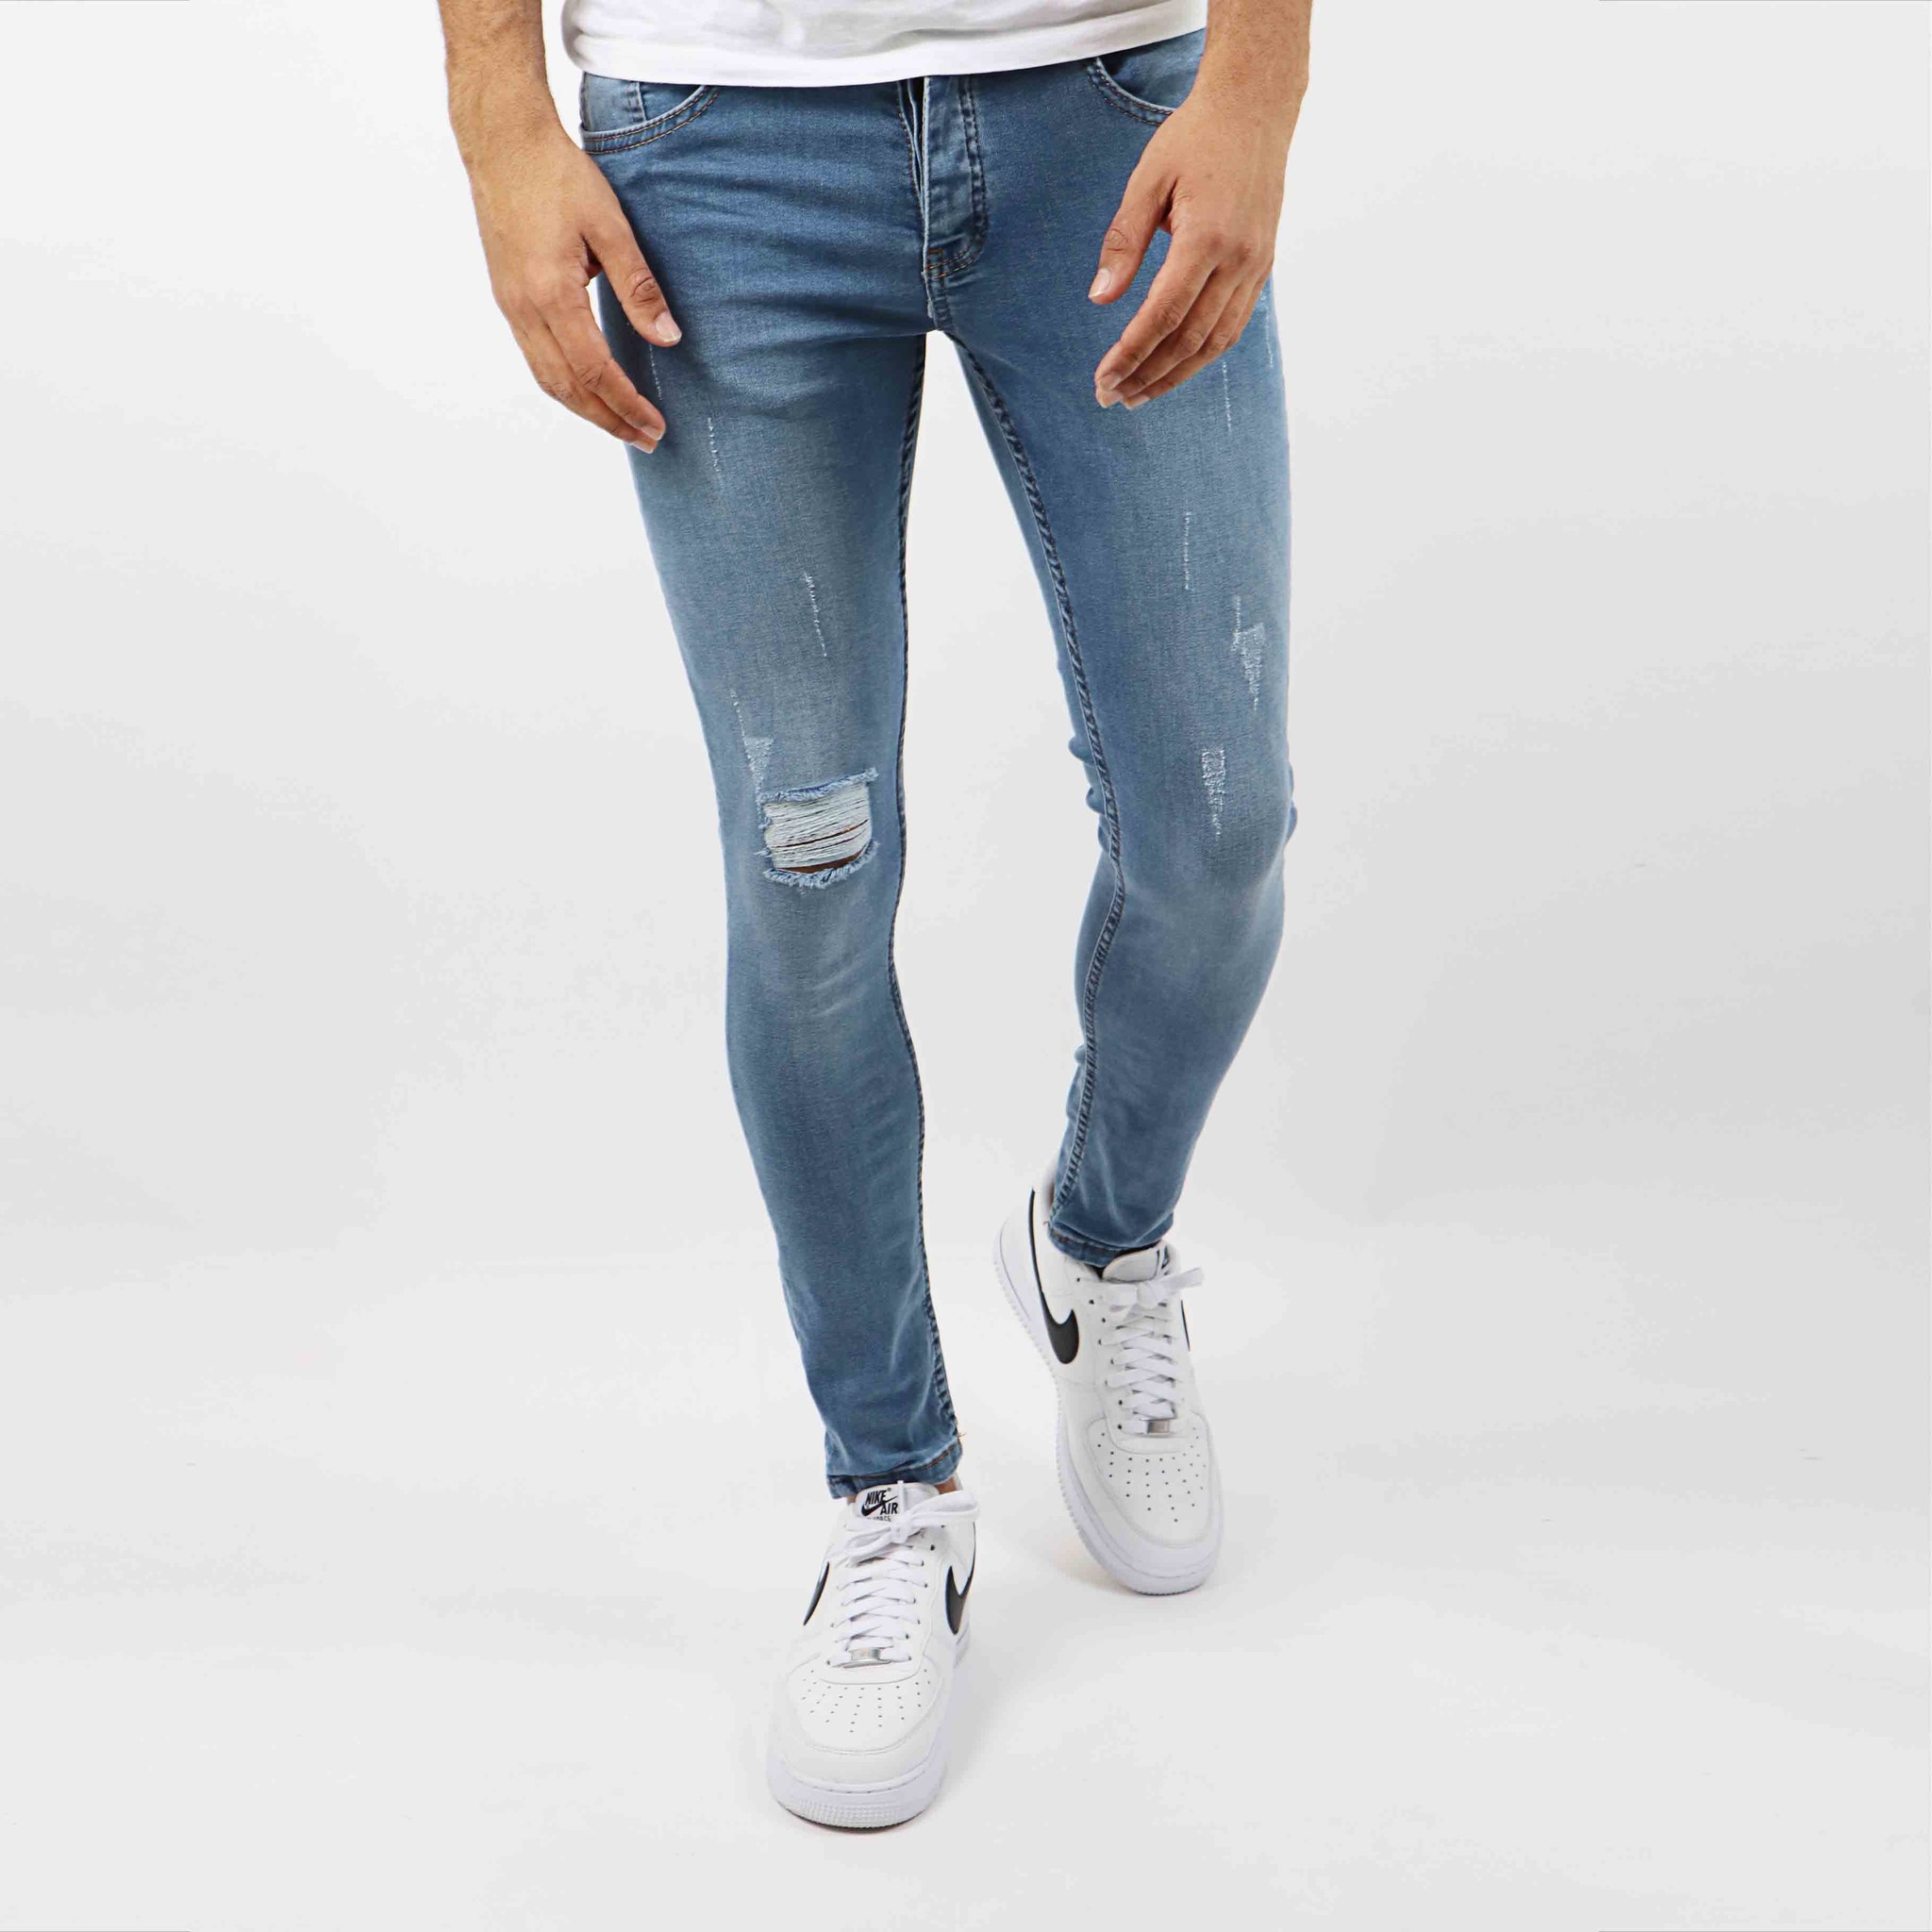 Blauwe Skinny Jeans Heren - Gratis verzending | VALENCI - VALENCI